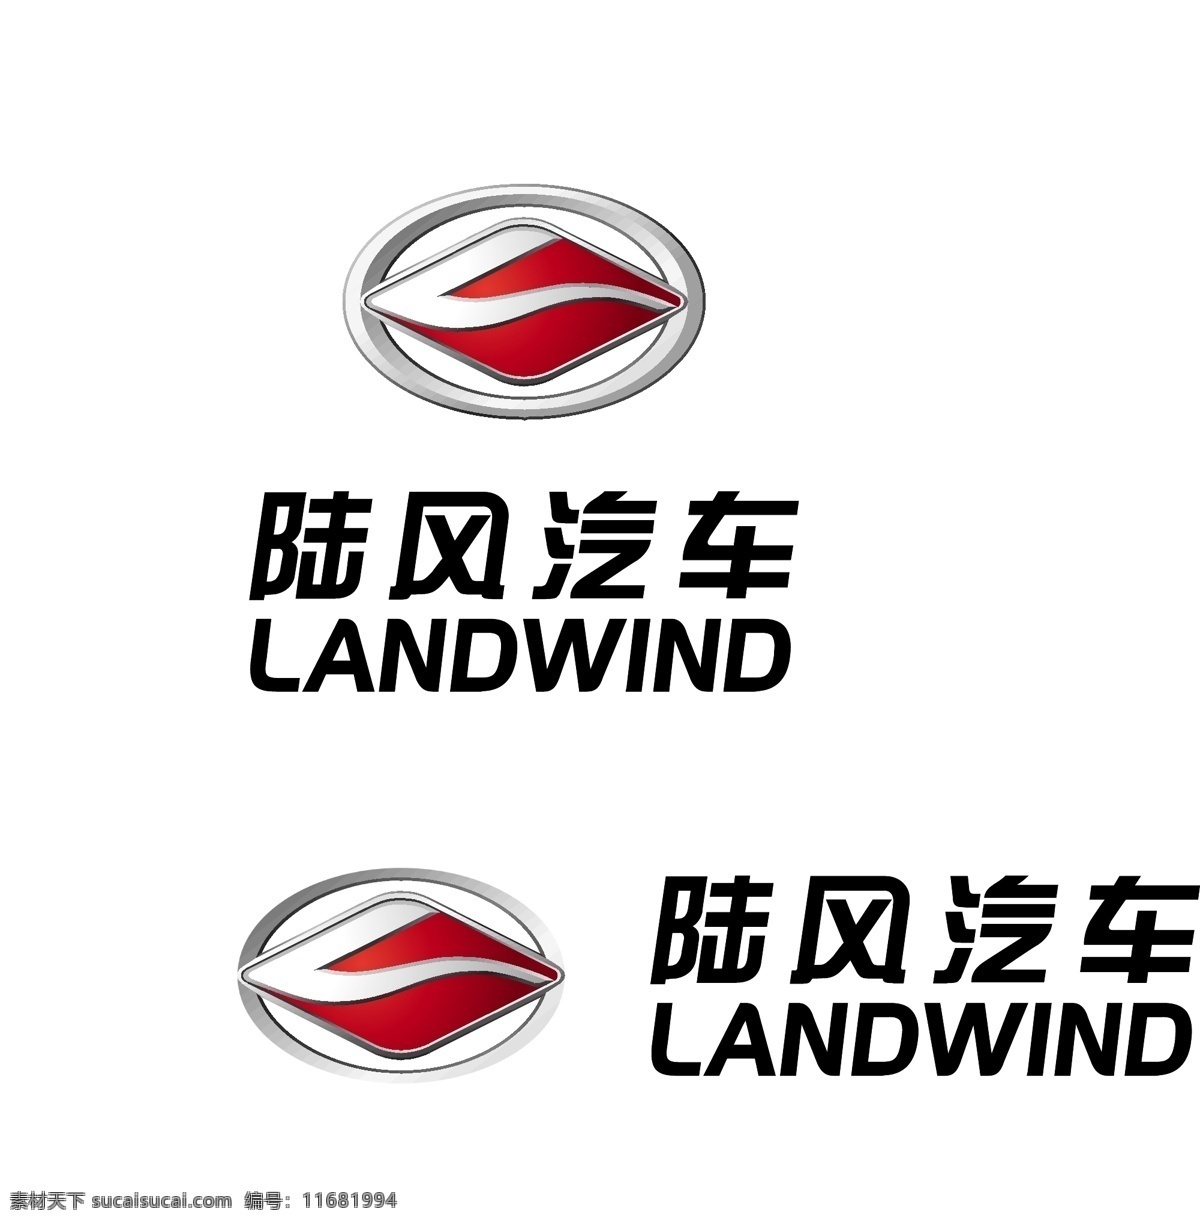 陆风 汽车 标准 logo 最新 汽车行业 企业 标志 标识标志图标 矢量